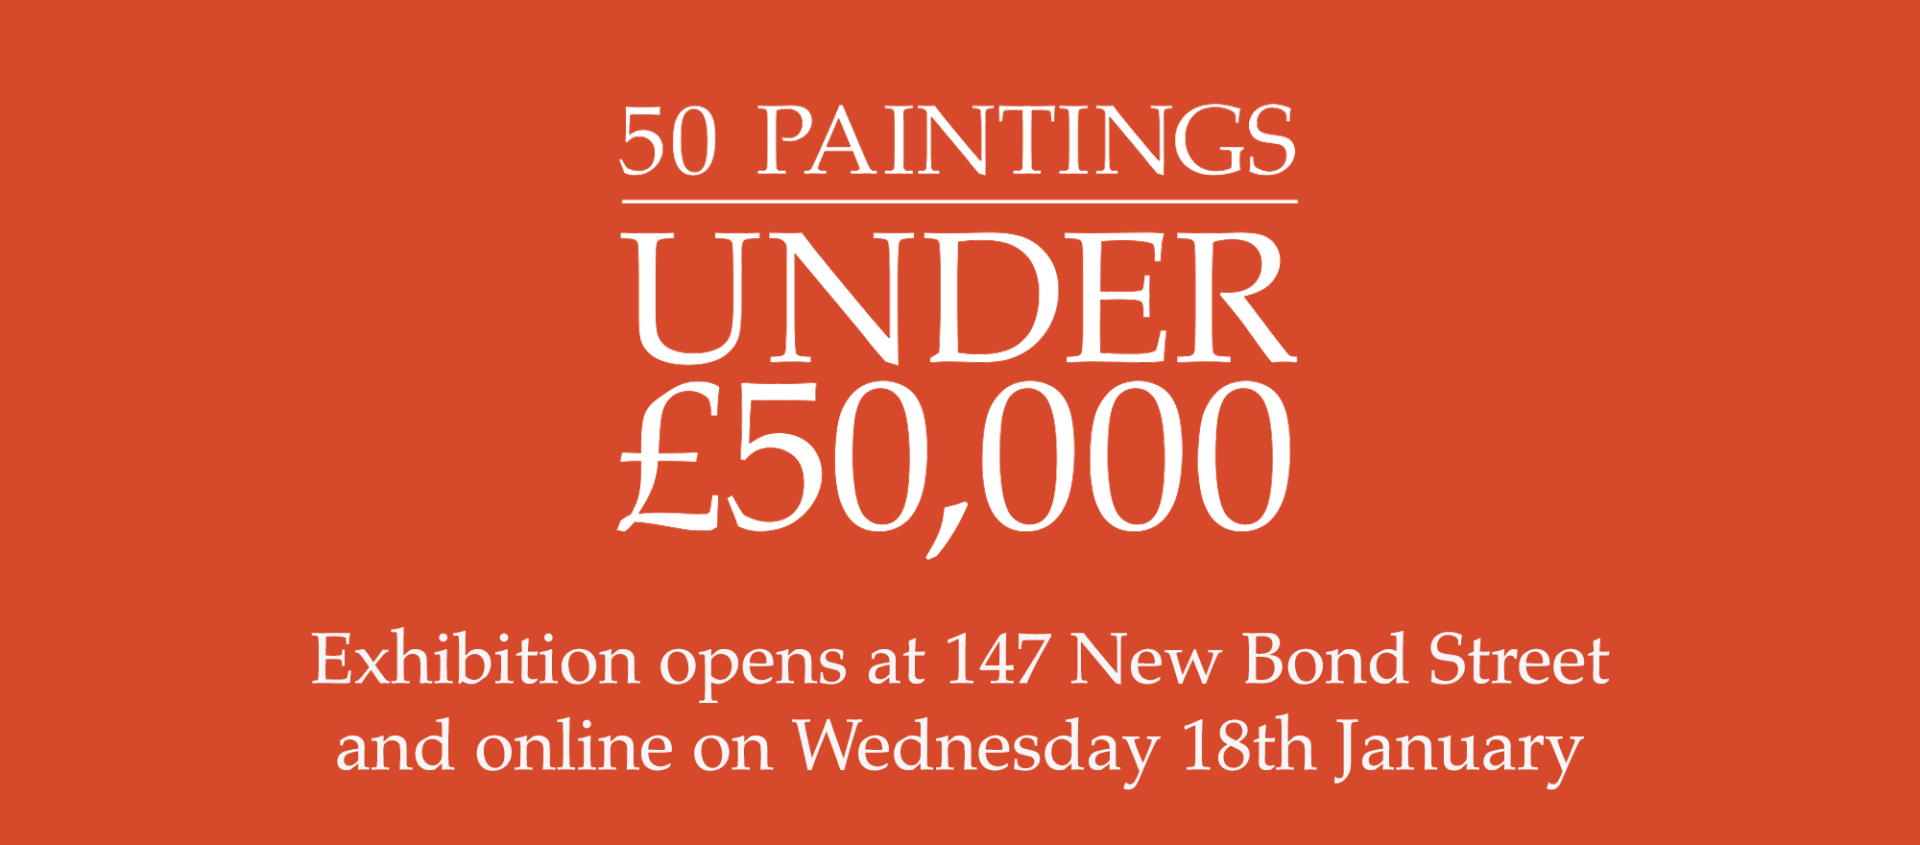 50 Paintings Under £50,000 